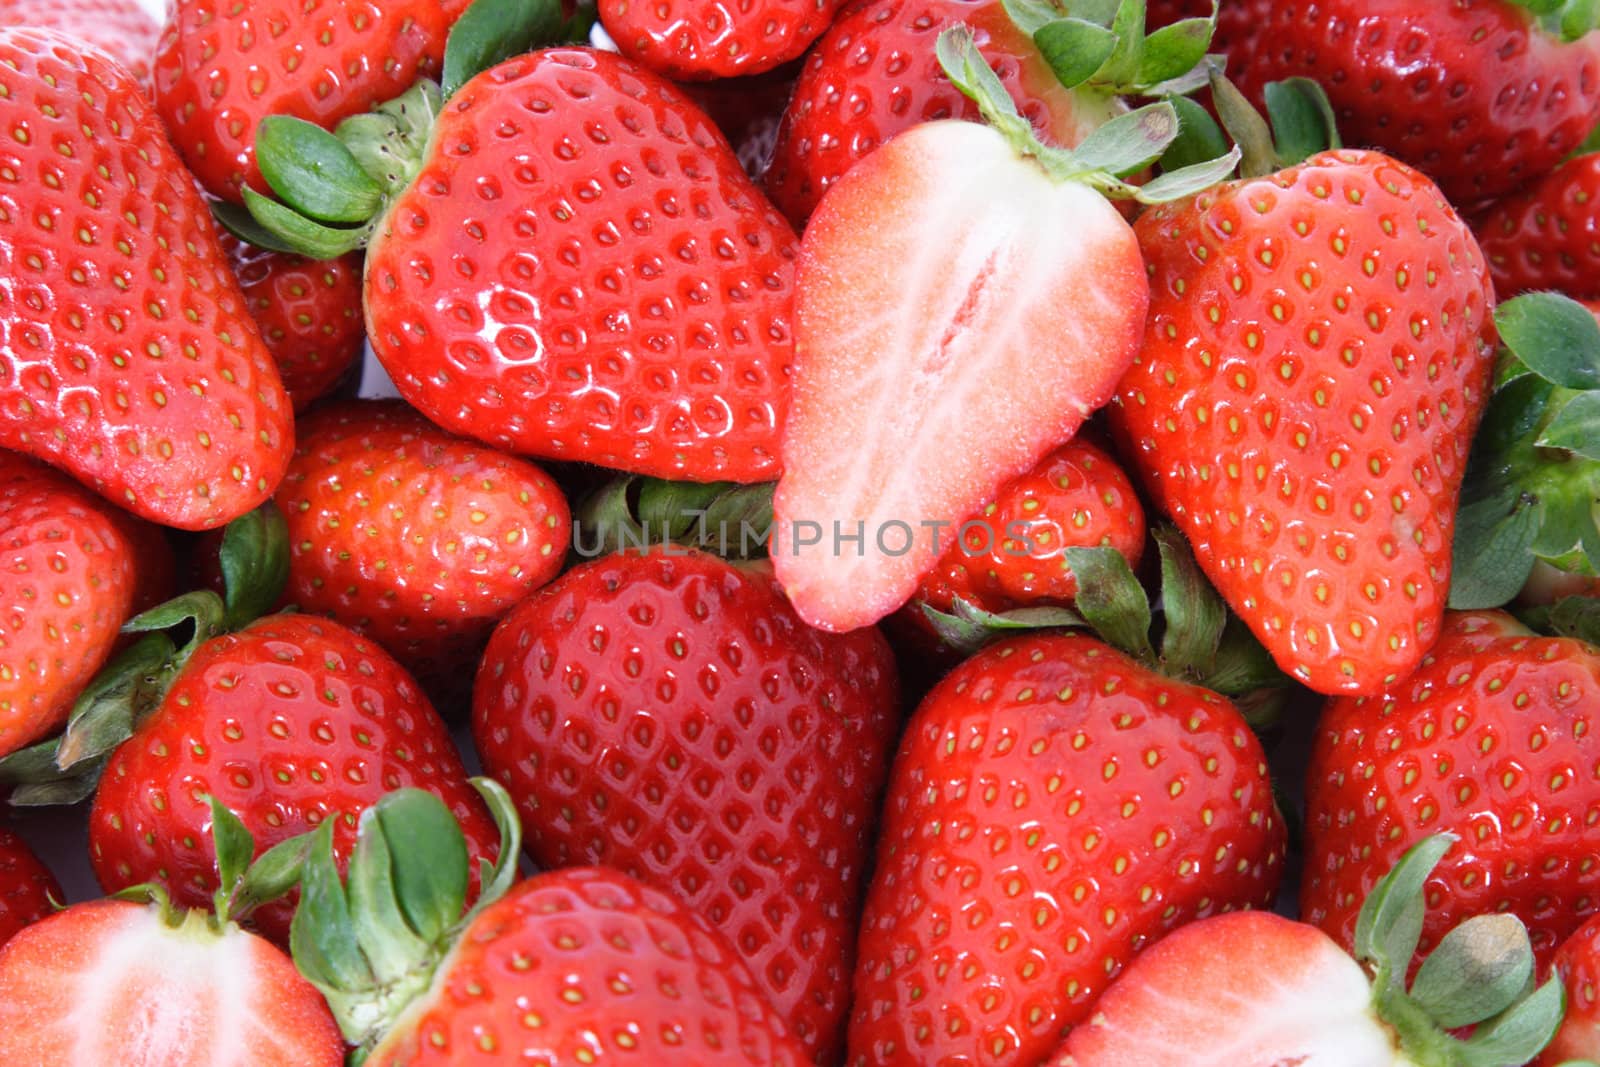 Strawberries by kaarsten